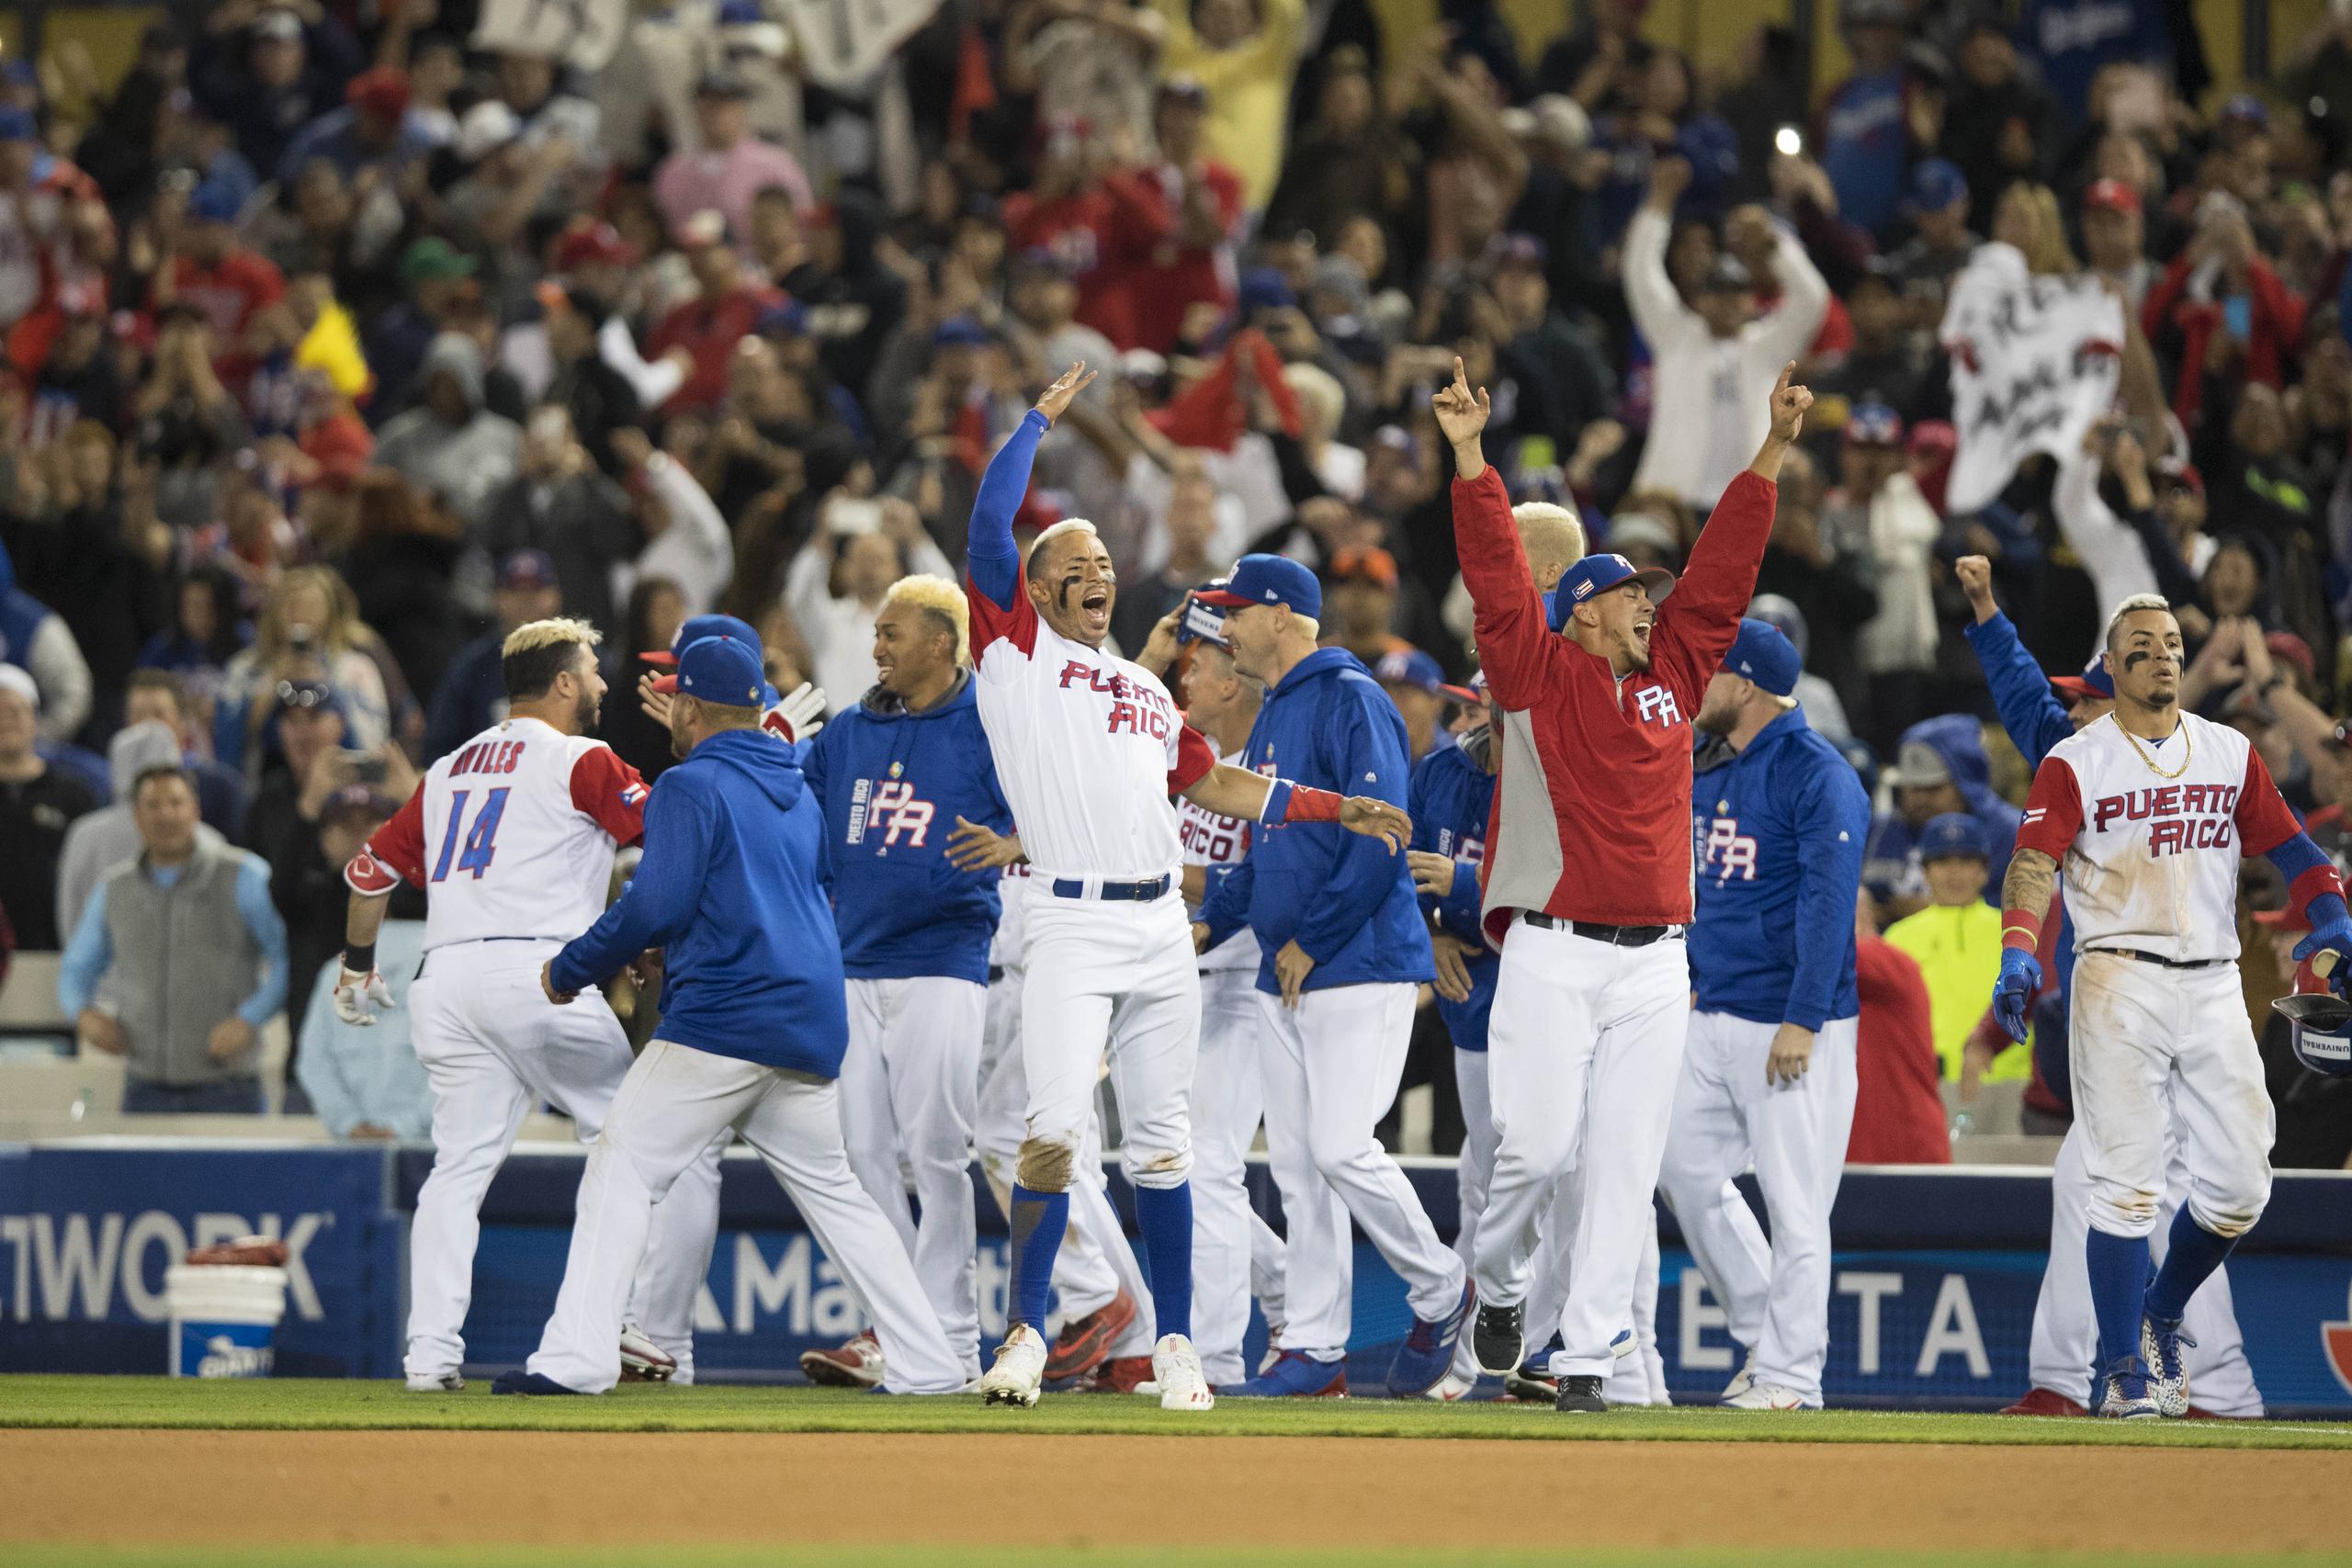 El equipo de Puerto Rico provocó que el béisbol nuevamente fuera divertido, alegre, repleto de pasión y orgullo patrio.